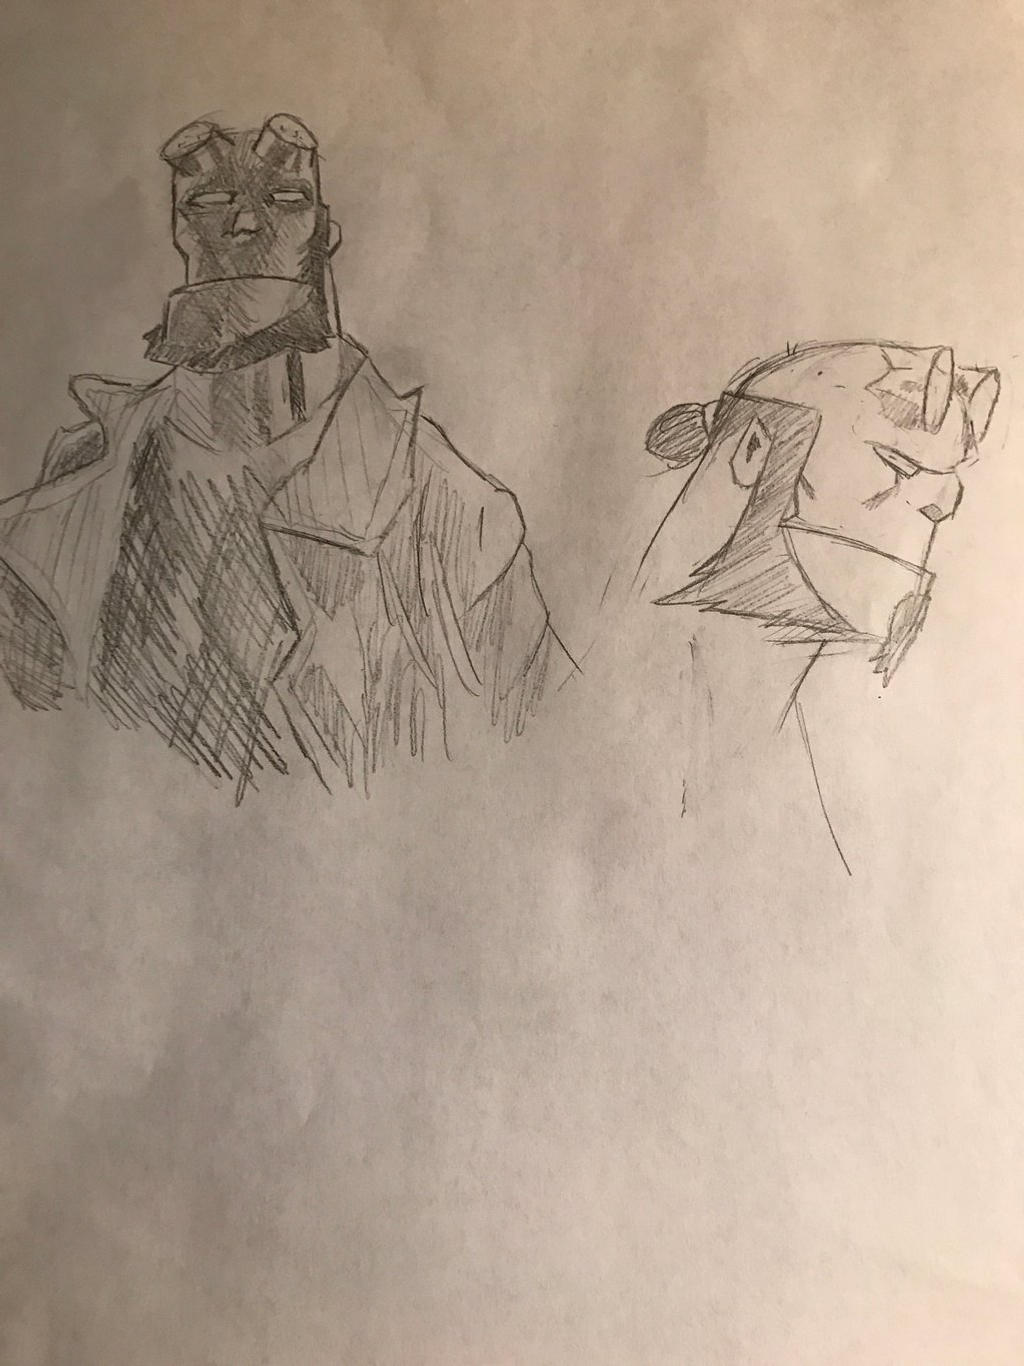 Hellboy doodles